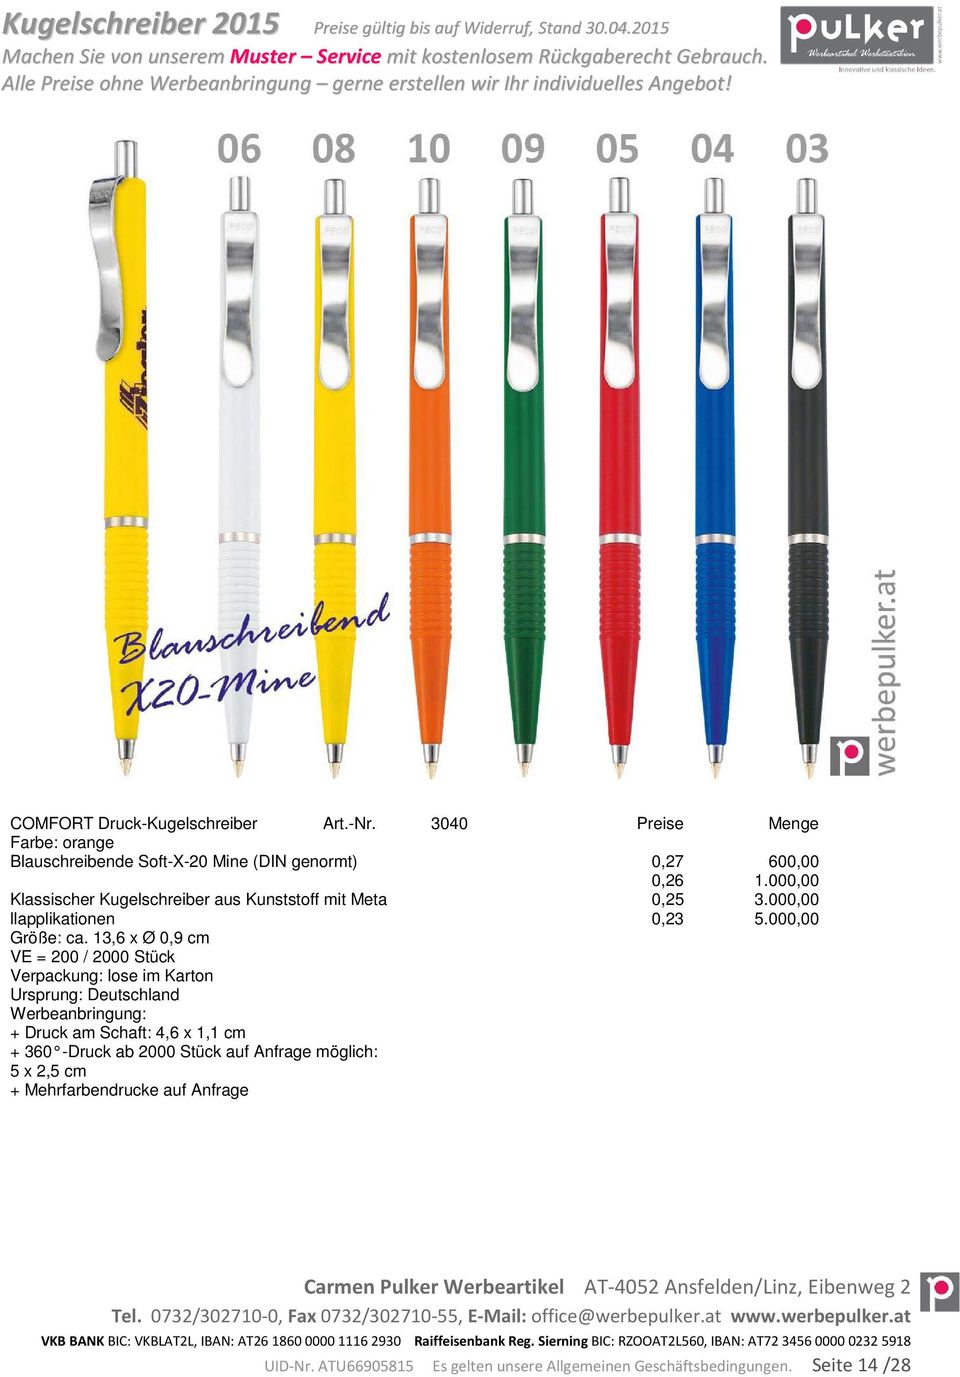 000,00 Klassischer Kugelschreiber aus Kunststoff mit Meta 0,25 3.000,00 llapplikationen 0,23 5.000,00 Größe: ca.